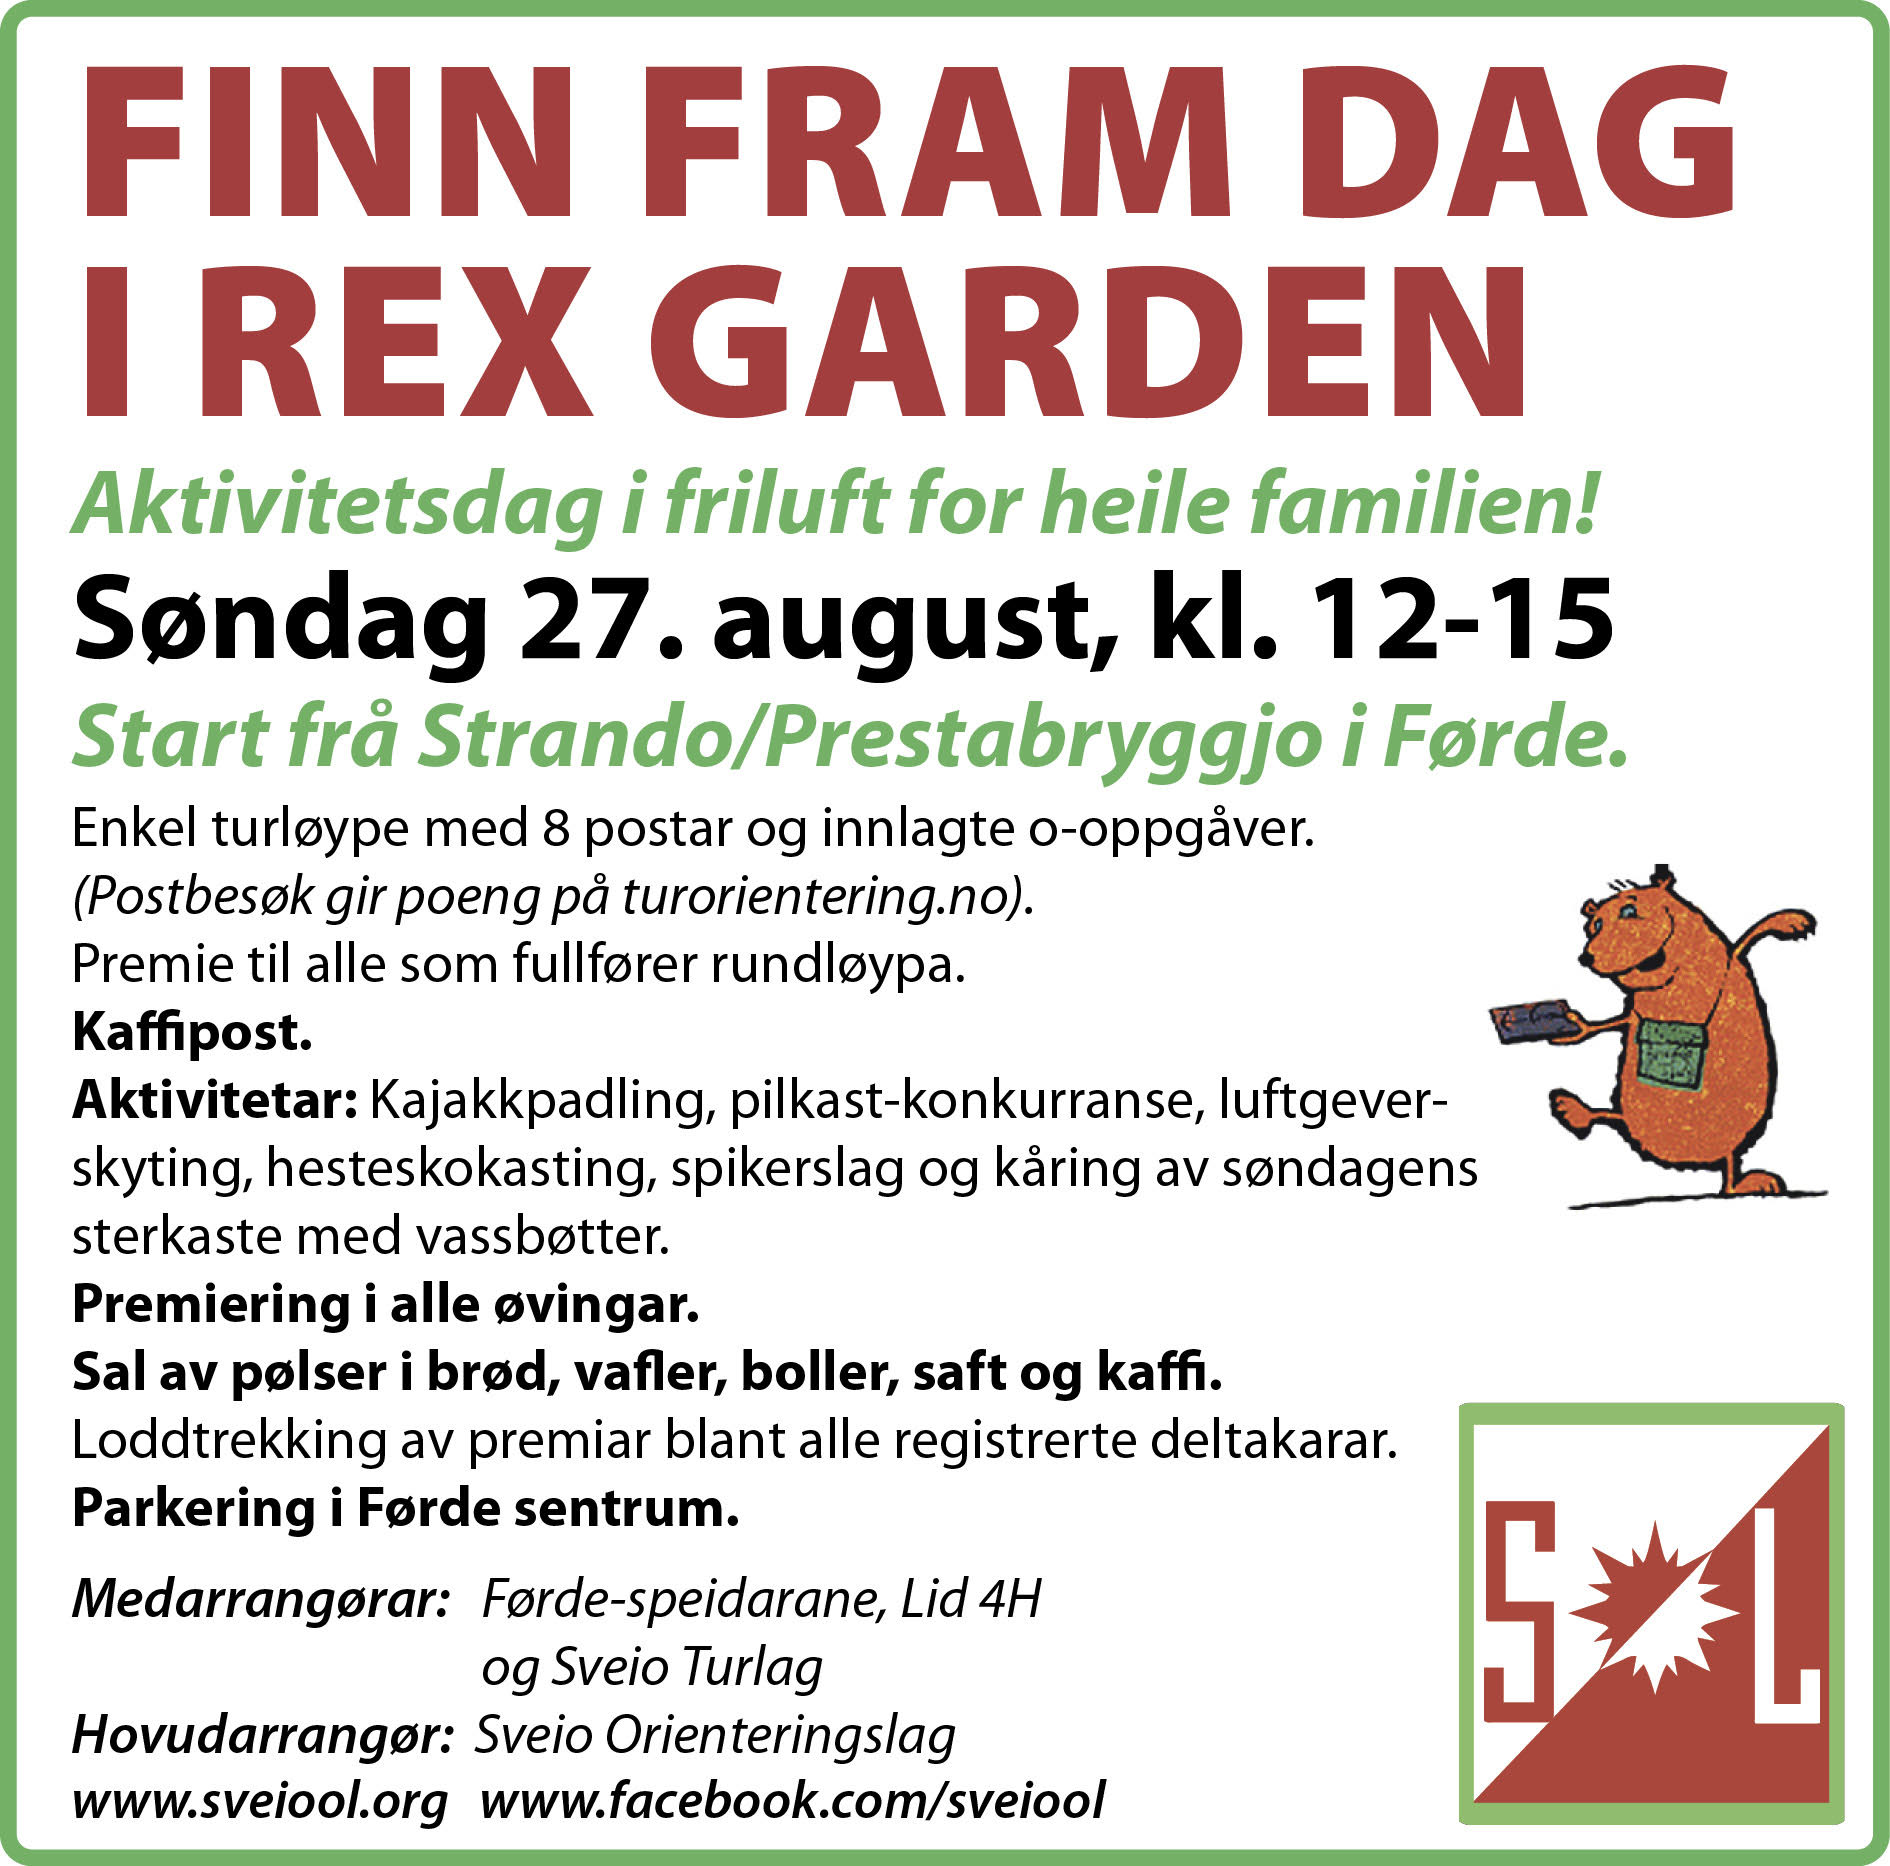 Inviterer til Finn Fram dagen søndag 27.august kl 12-15 på Prestabryggjo i Førde